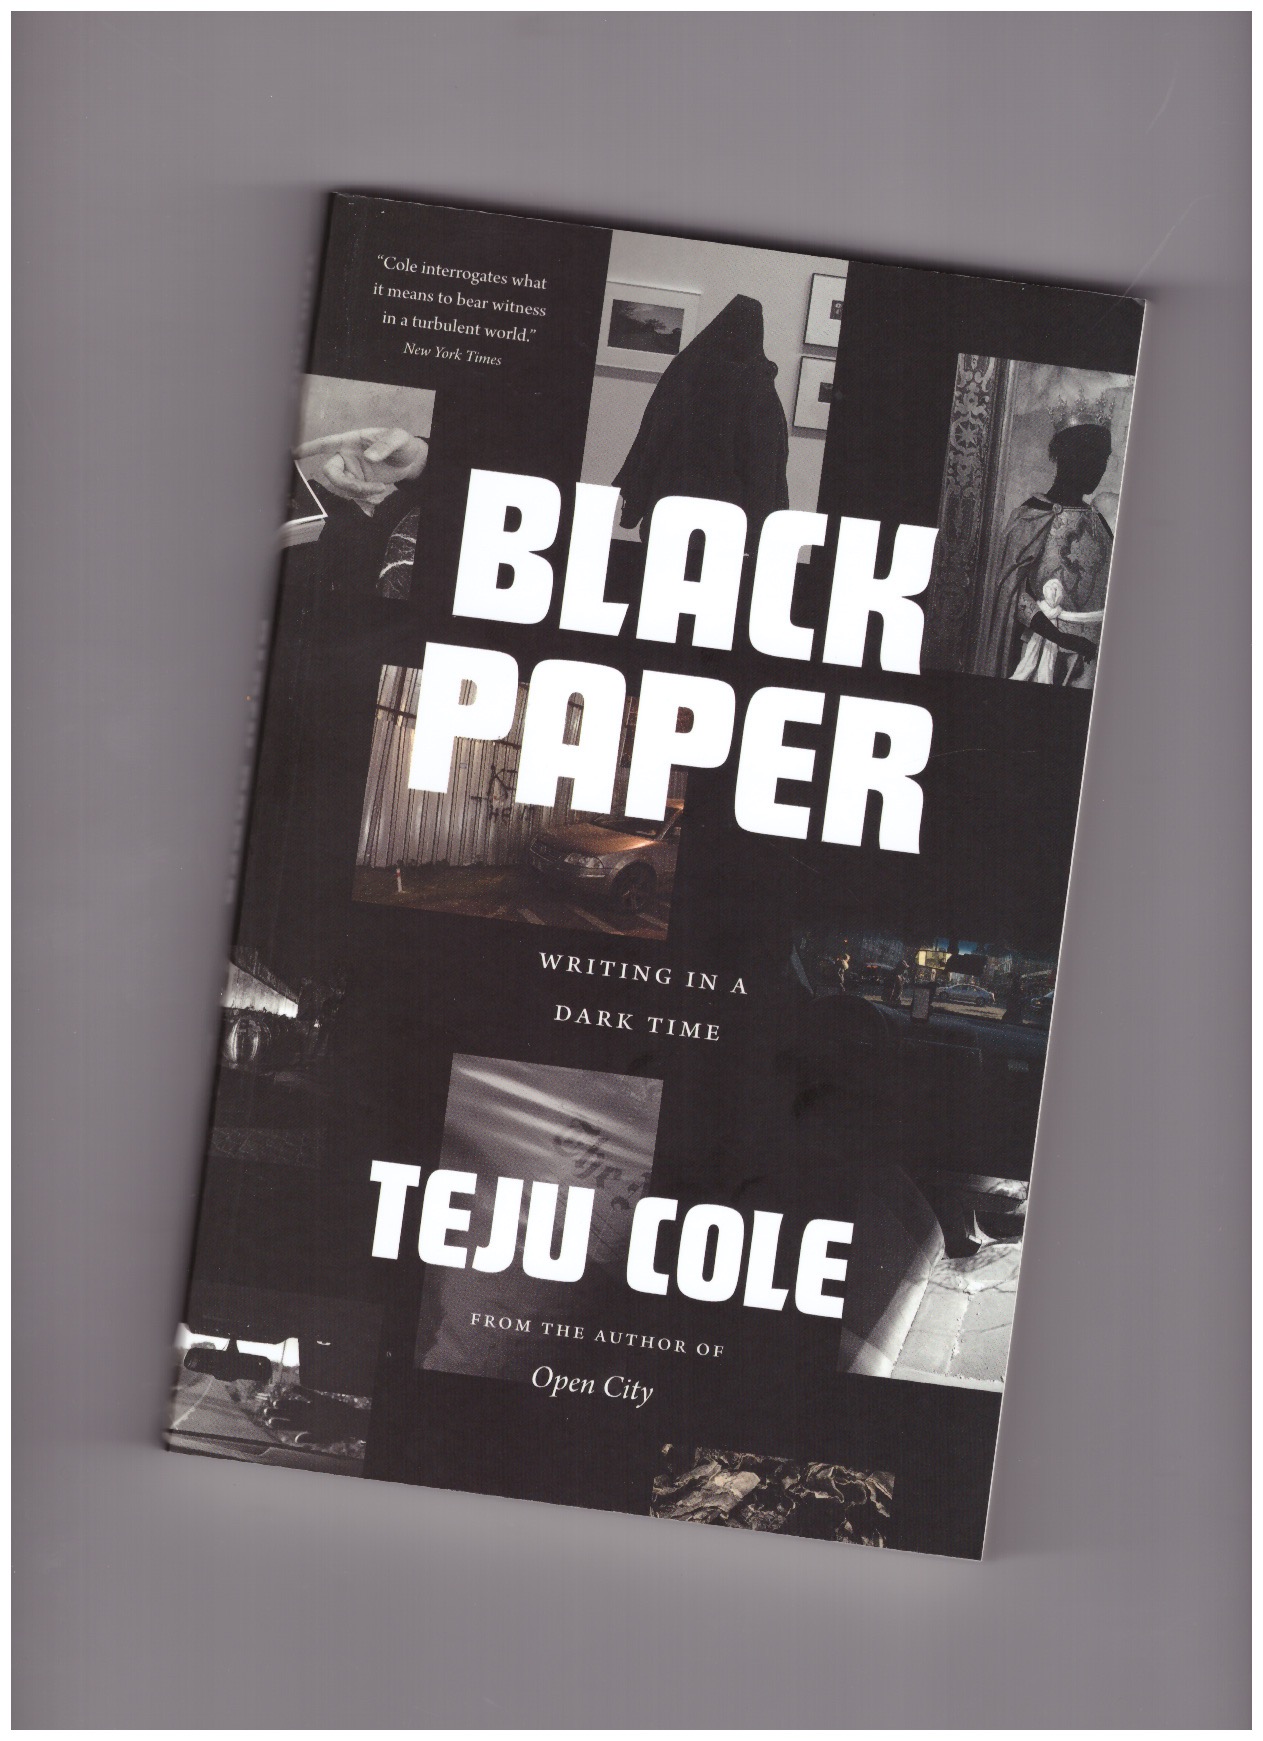 COLE, Teju - Black paper